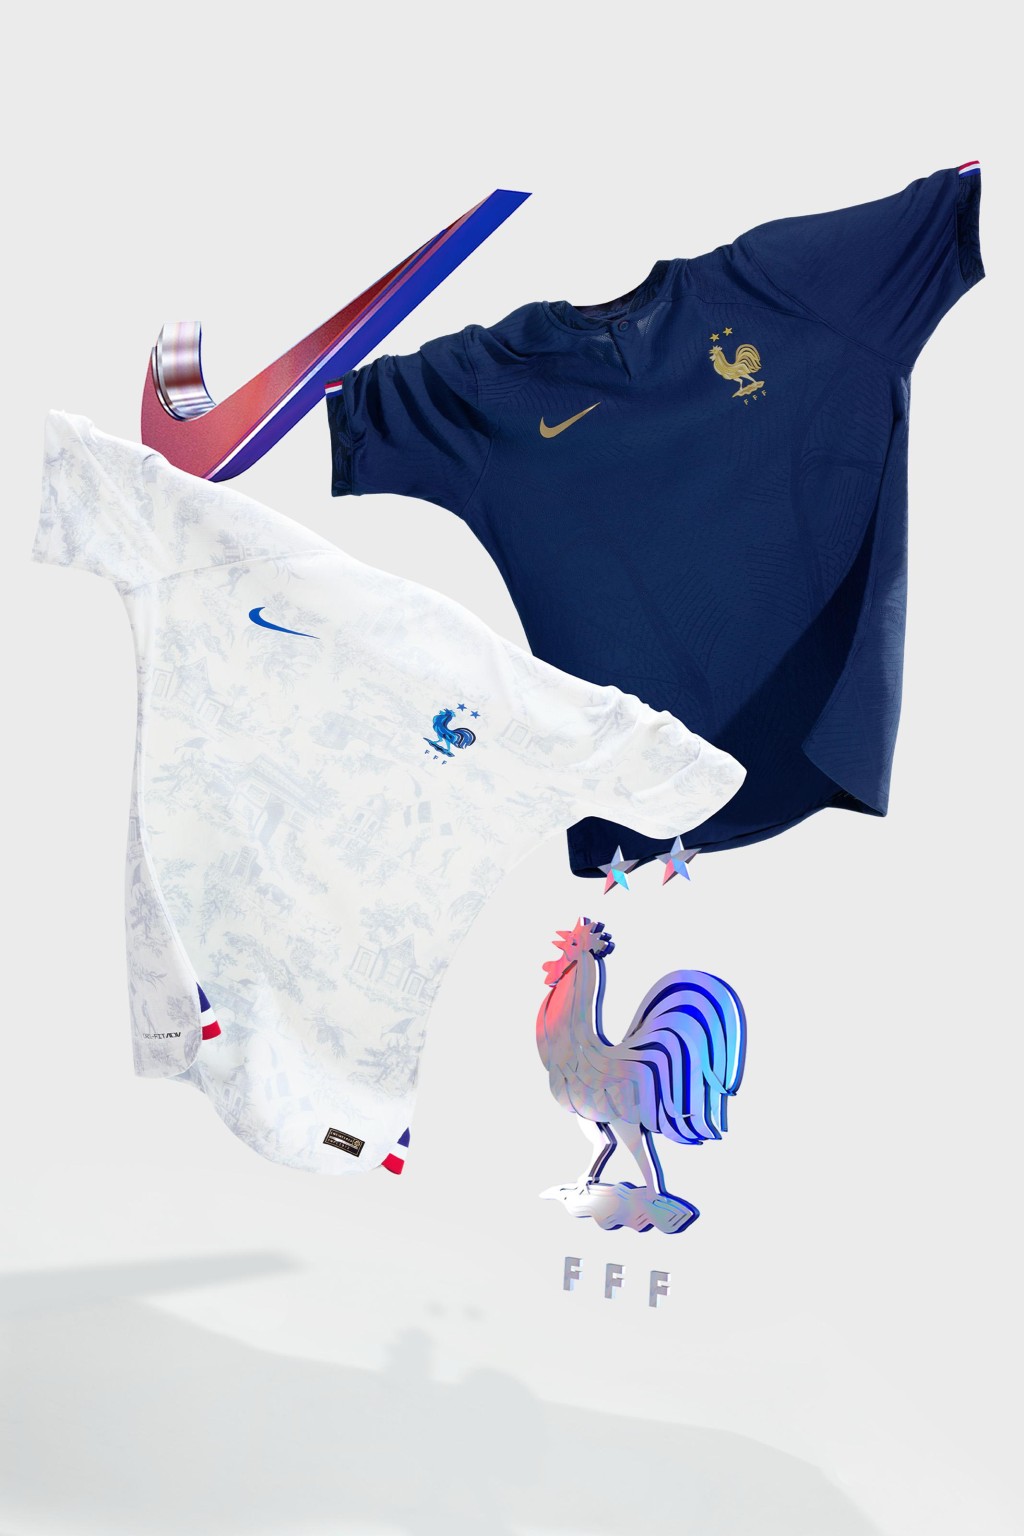 ６）法国 / 主场球衣： 法国今届于世界杯力争卫冕，主场球衣则以简洁风格为主调，球衣的橡树叶和橄榄枝图案代表著力量、团结与和平。经典的法式设计元素包括袖口的三色图案，以及配以金色徽章，简约却不失华丽。Nike图片